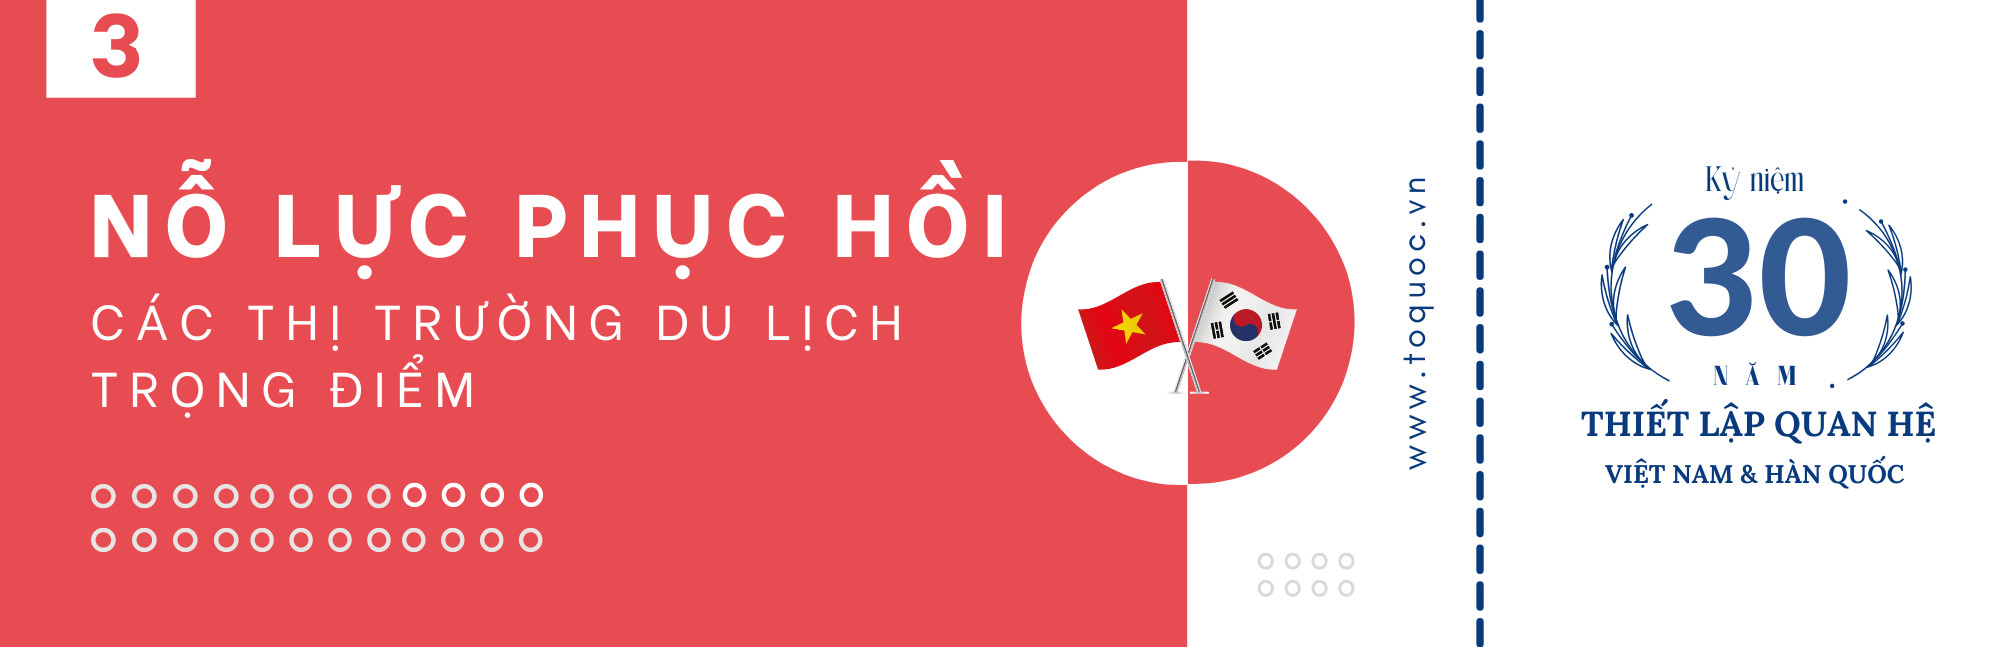 Hợp tác Văn hóa - Thể thao - Du lịch giữa Việt Nam - Hàn Quốc: Cùng nhau nhanh hơn, cao hơn, xa hơn - Ảnh 6.